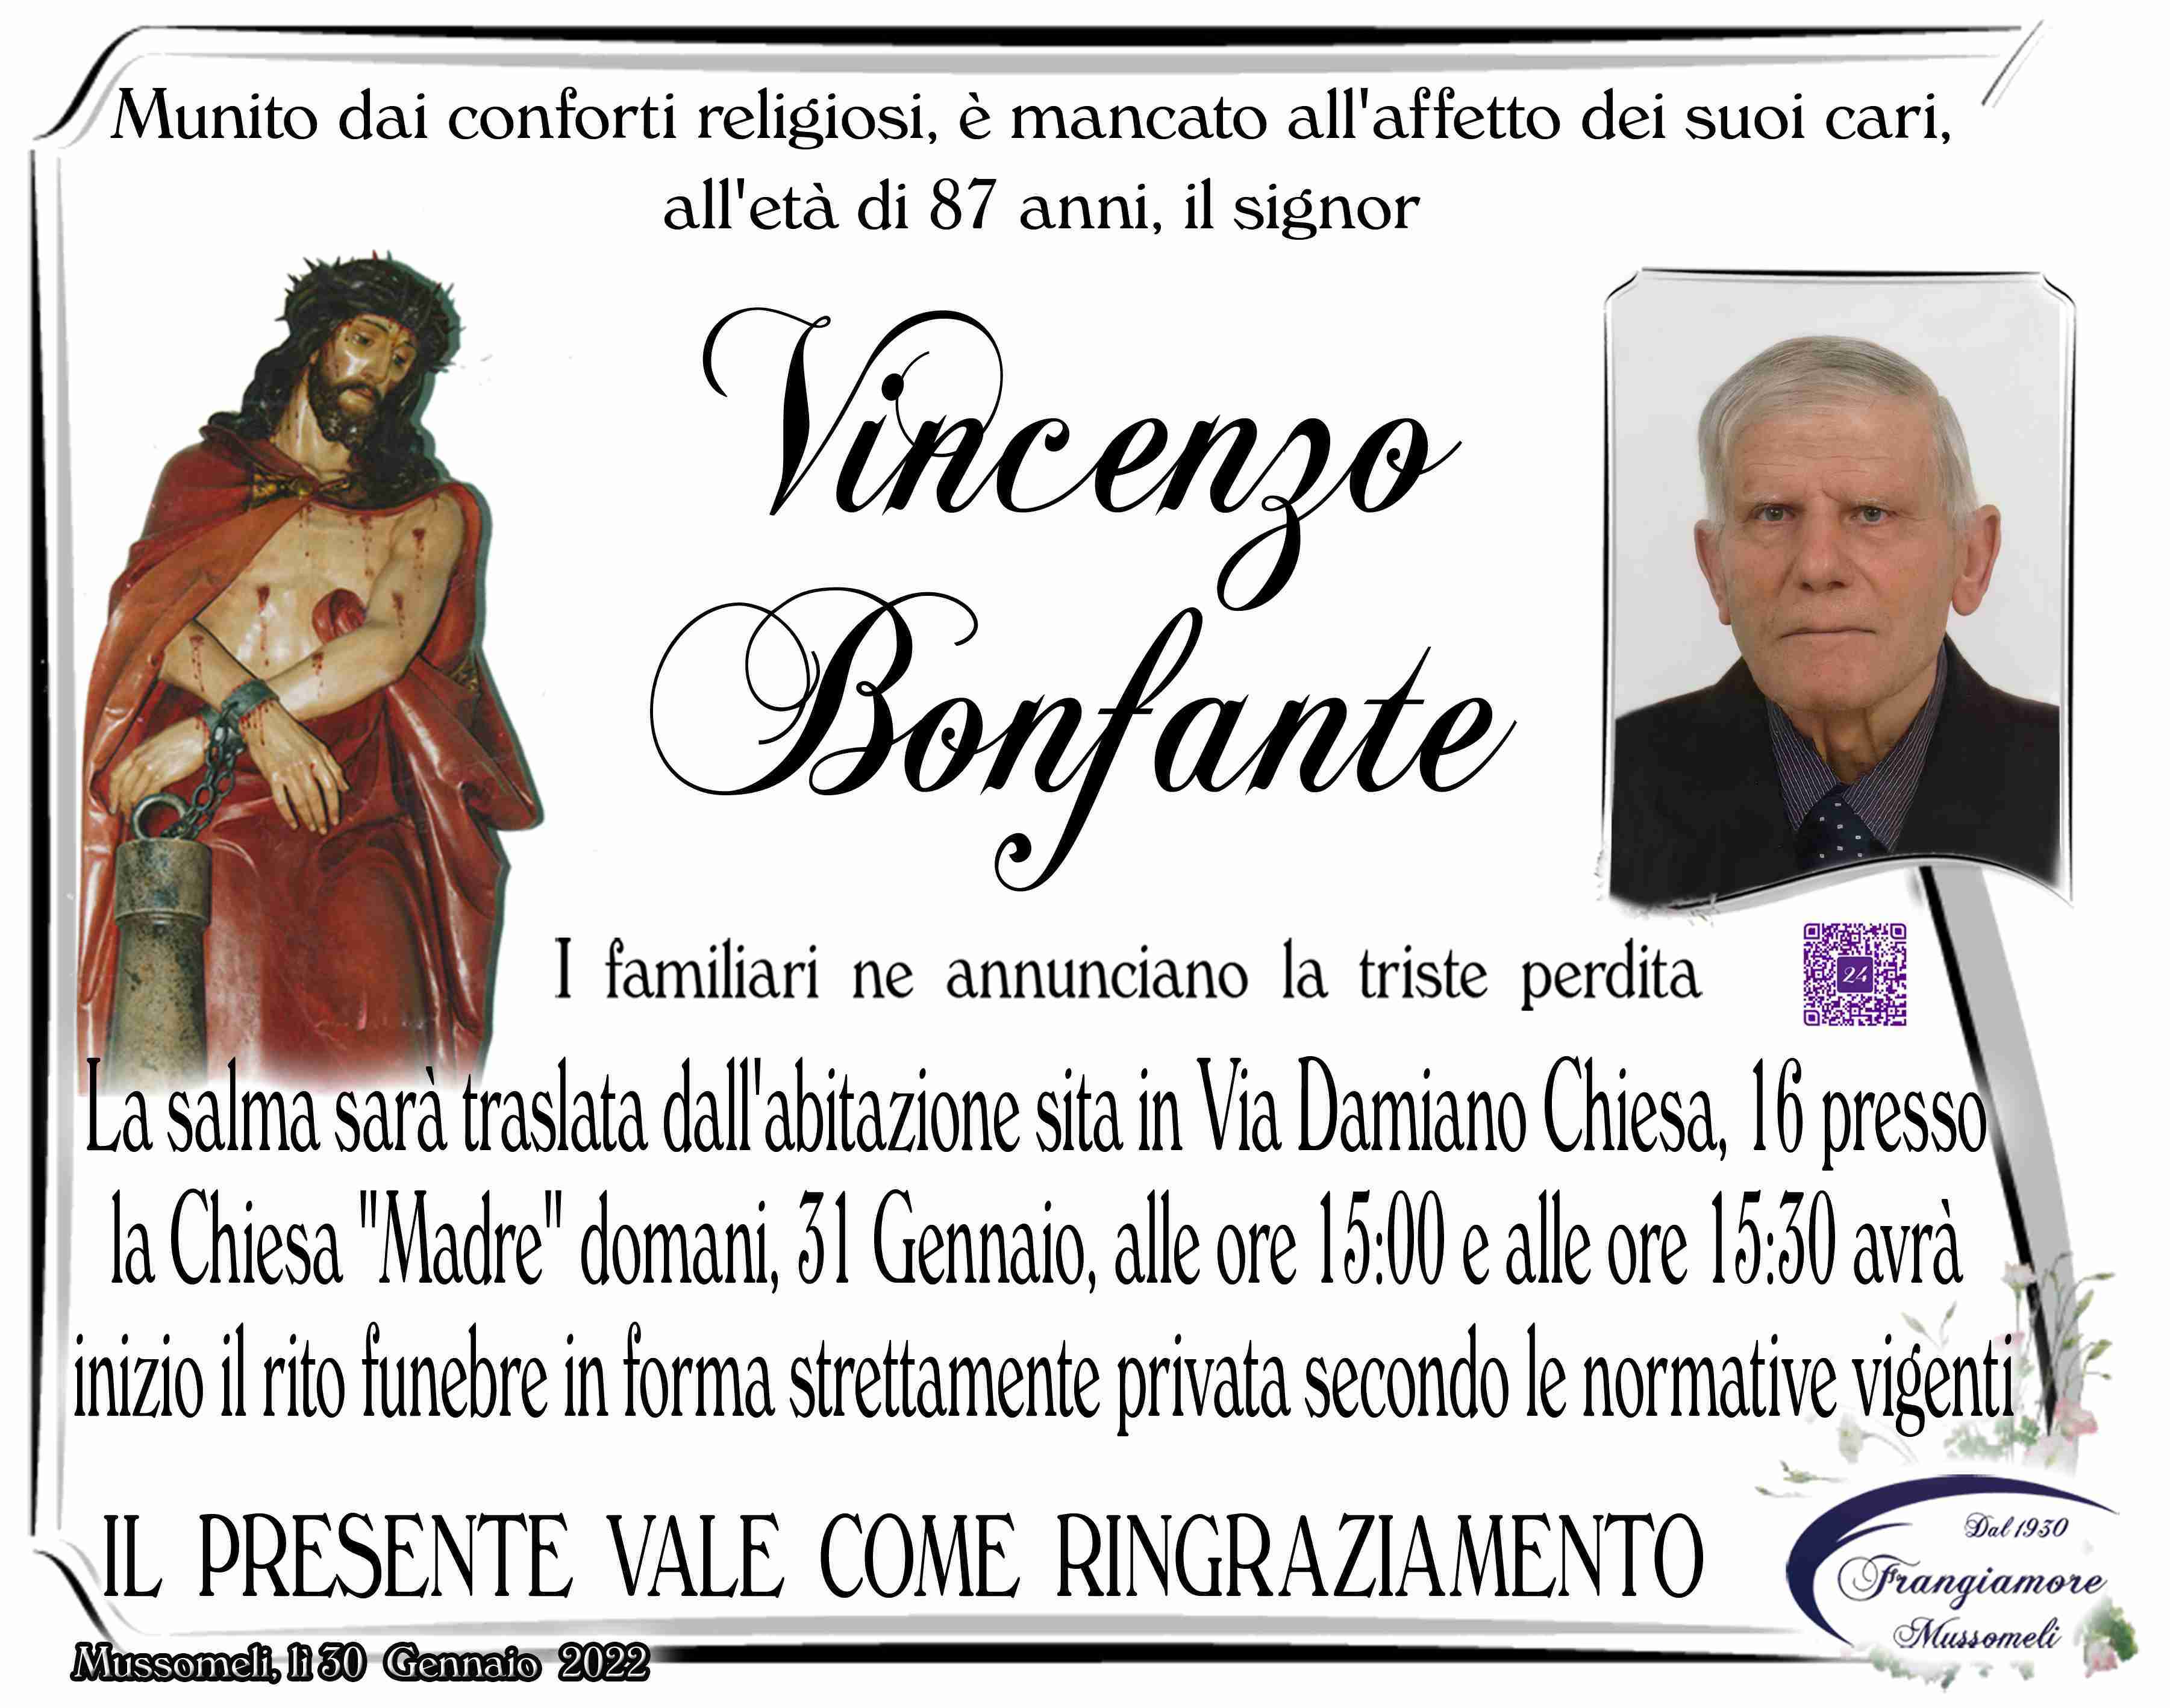 Vincenzo Bonfante